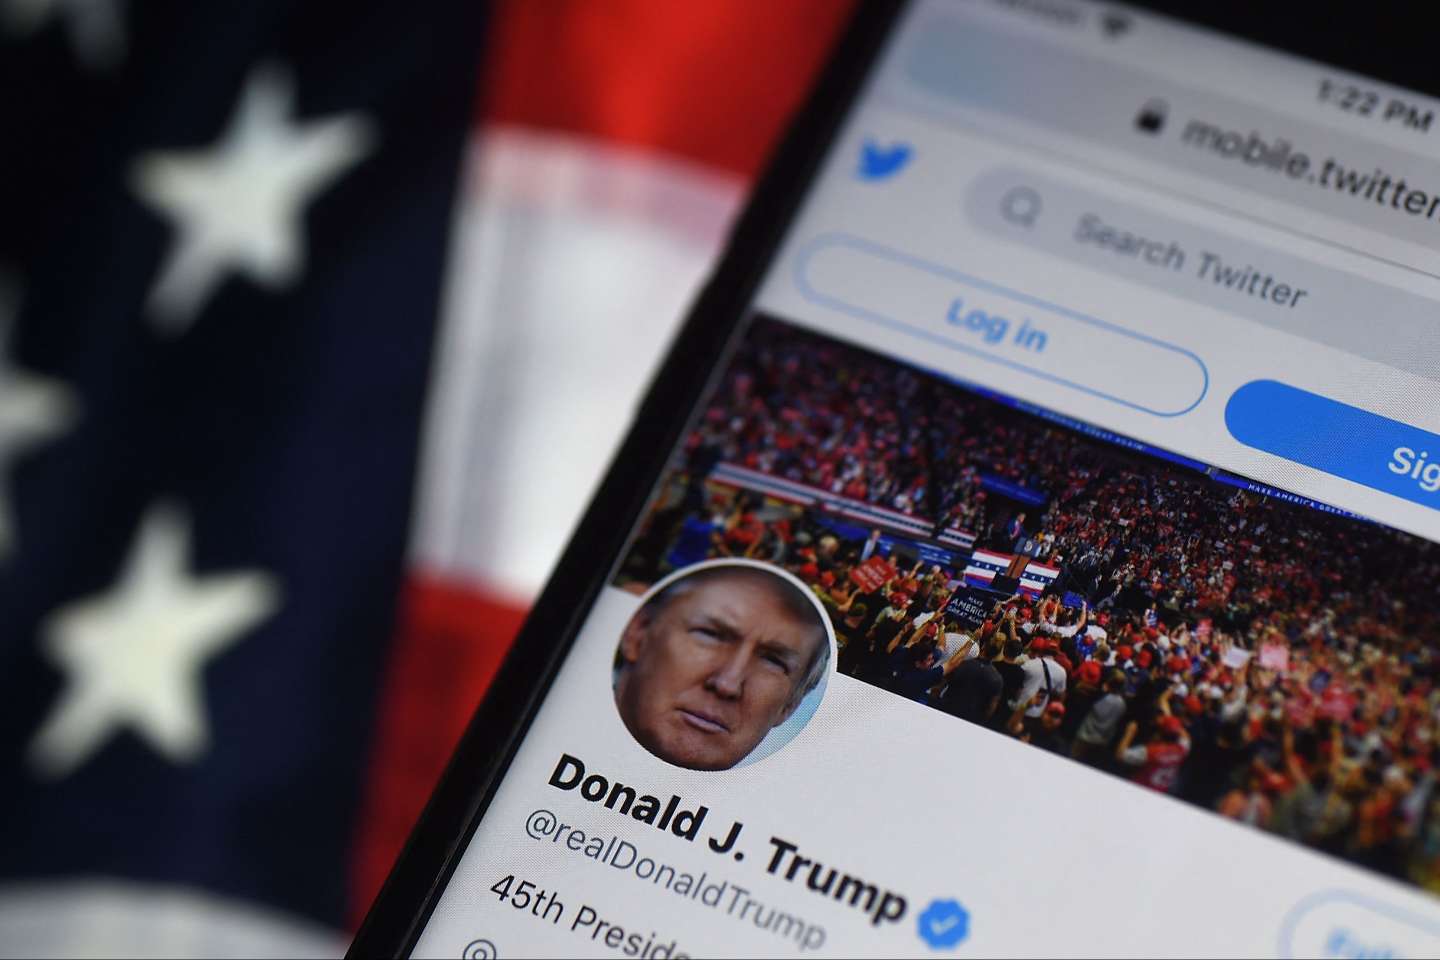 La réactivation du compte Twitter de Donald Trump, une décision symbolique